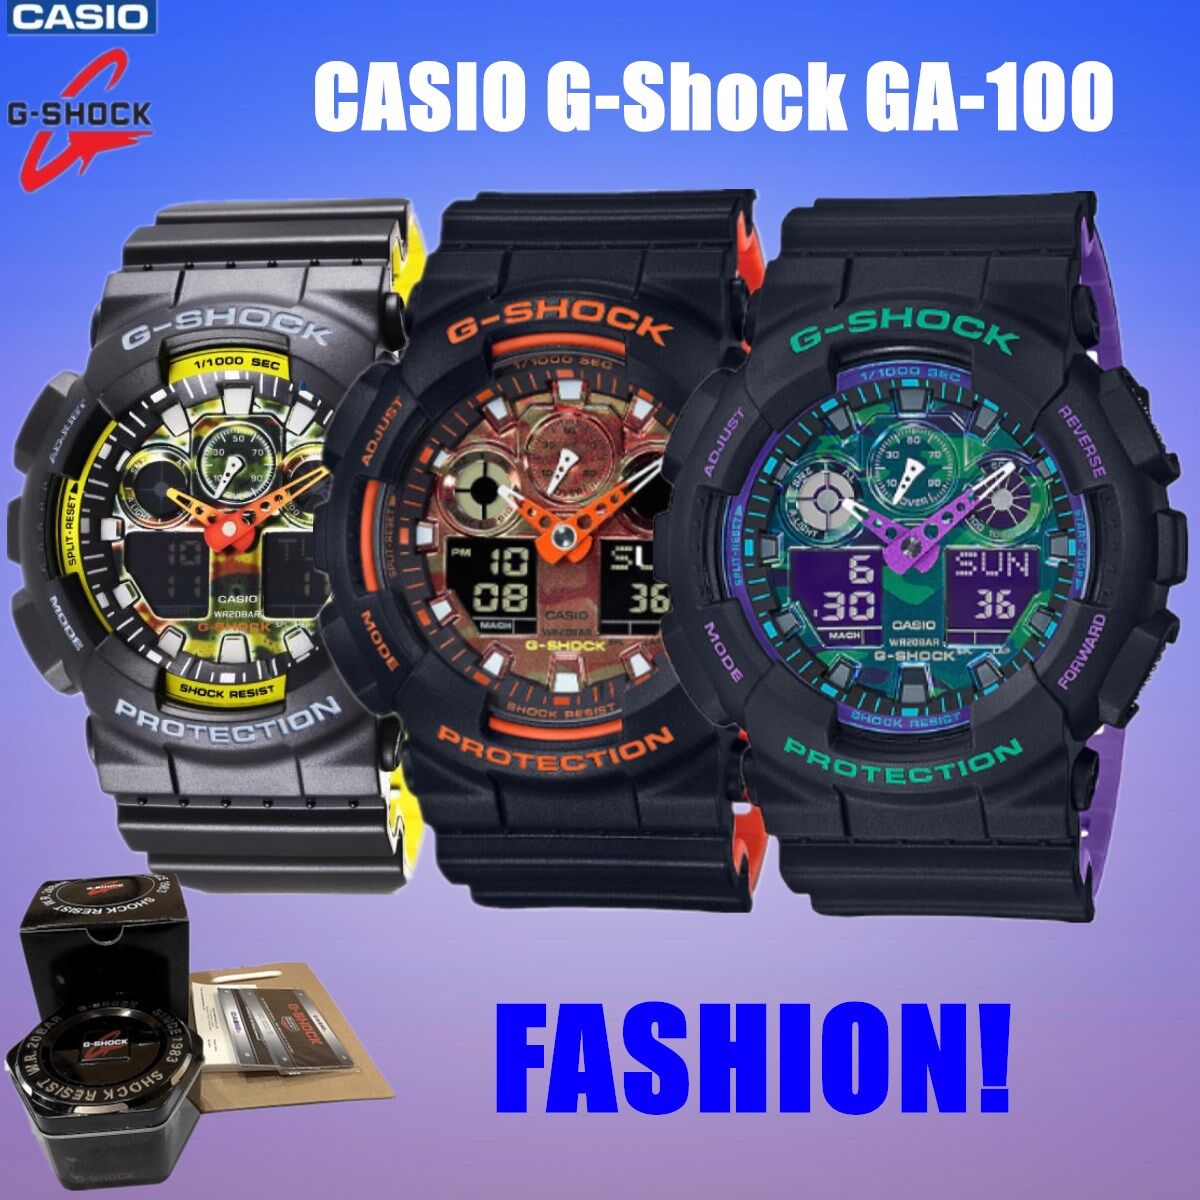 CASIO G-Shock GA-100 นาฬิกาข้อมือแฟชั่น มีสามสีให้เลือก ใส่ได้ทั้งชายและหญิง หน้าปัด40มม.